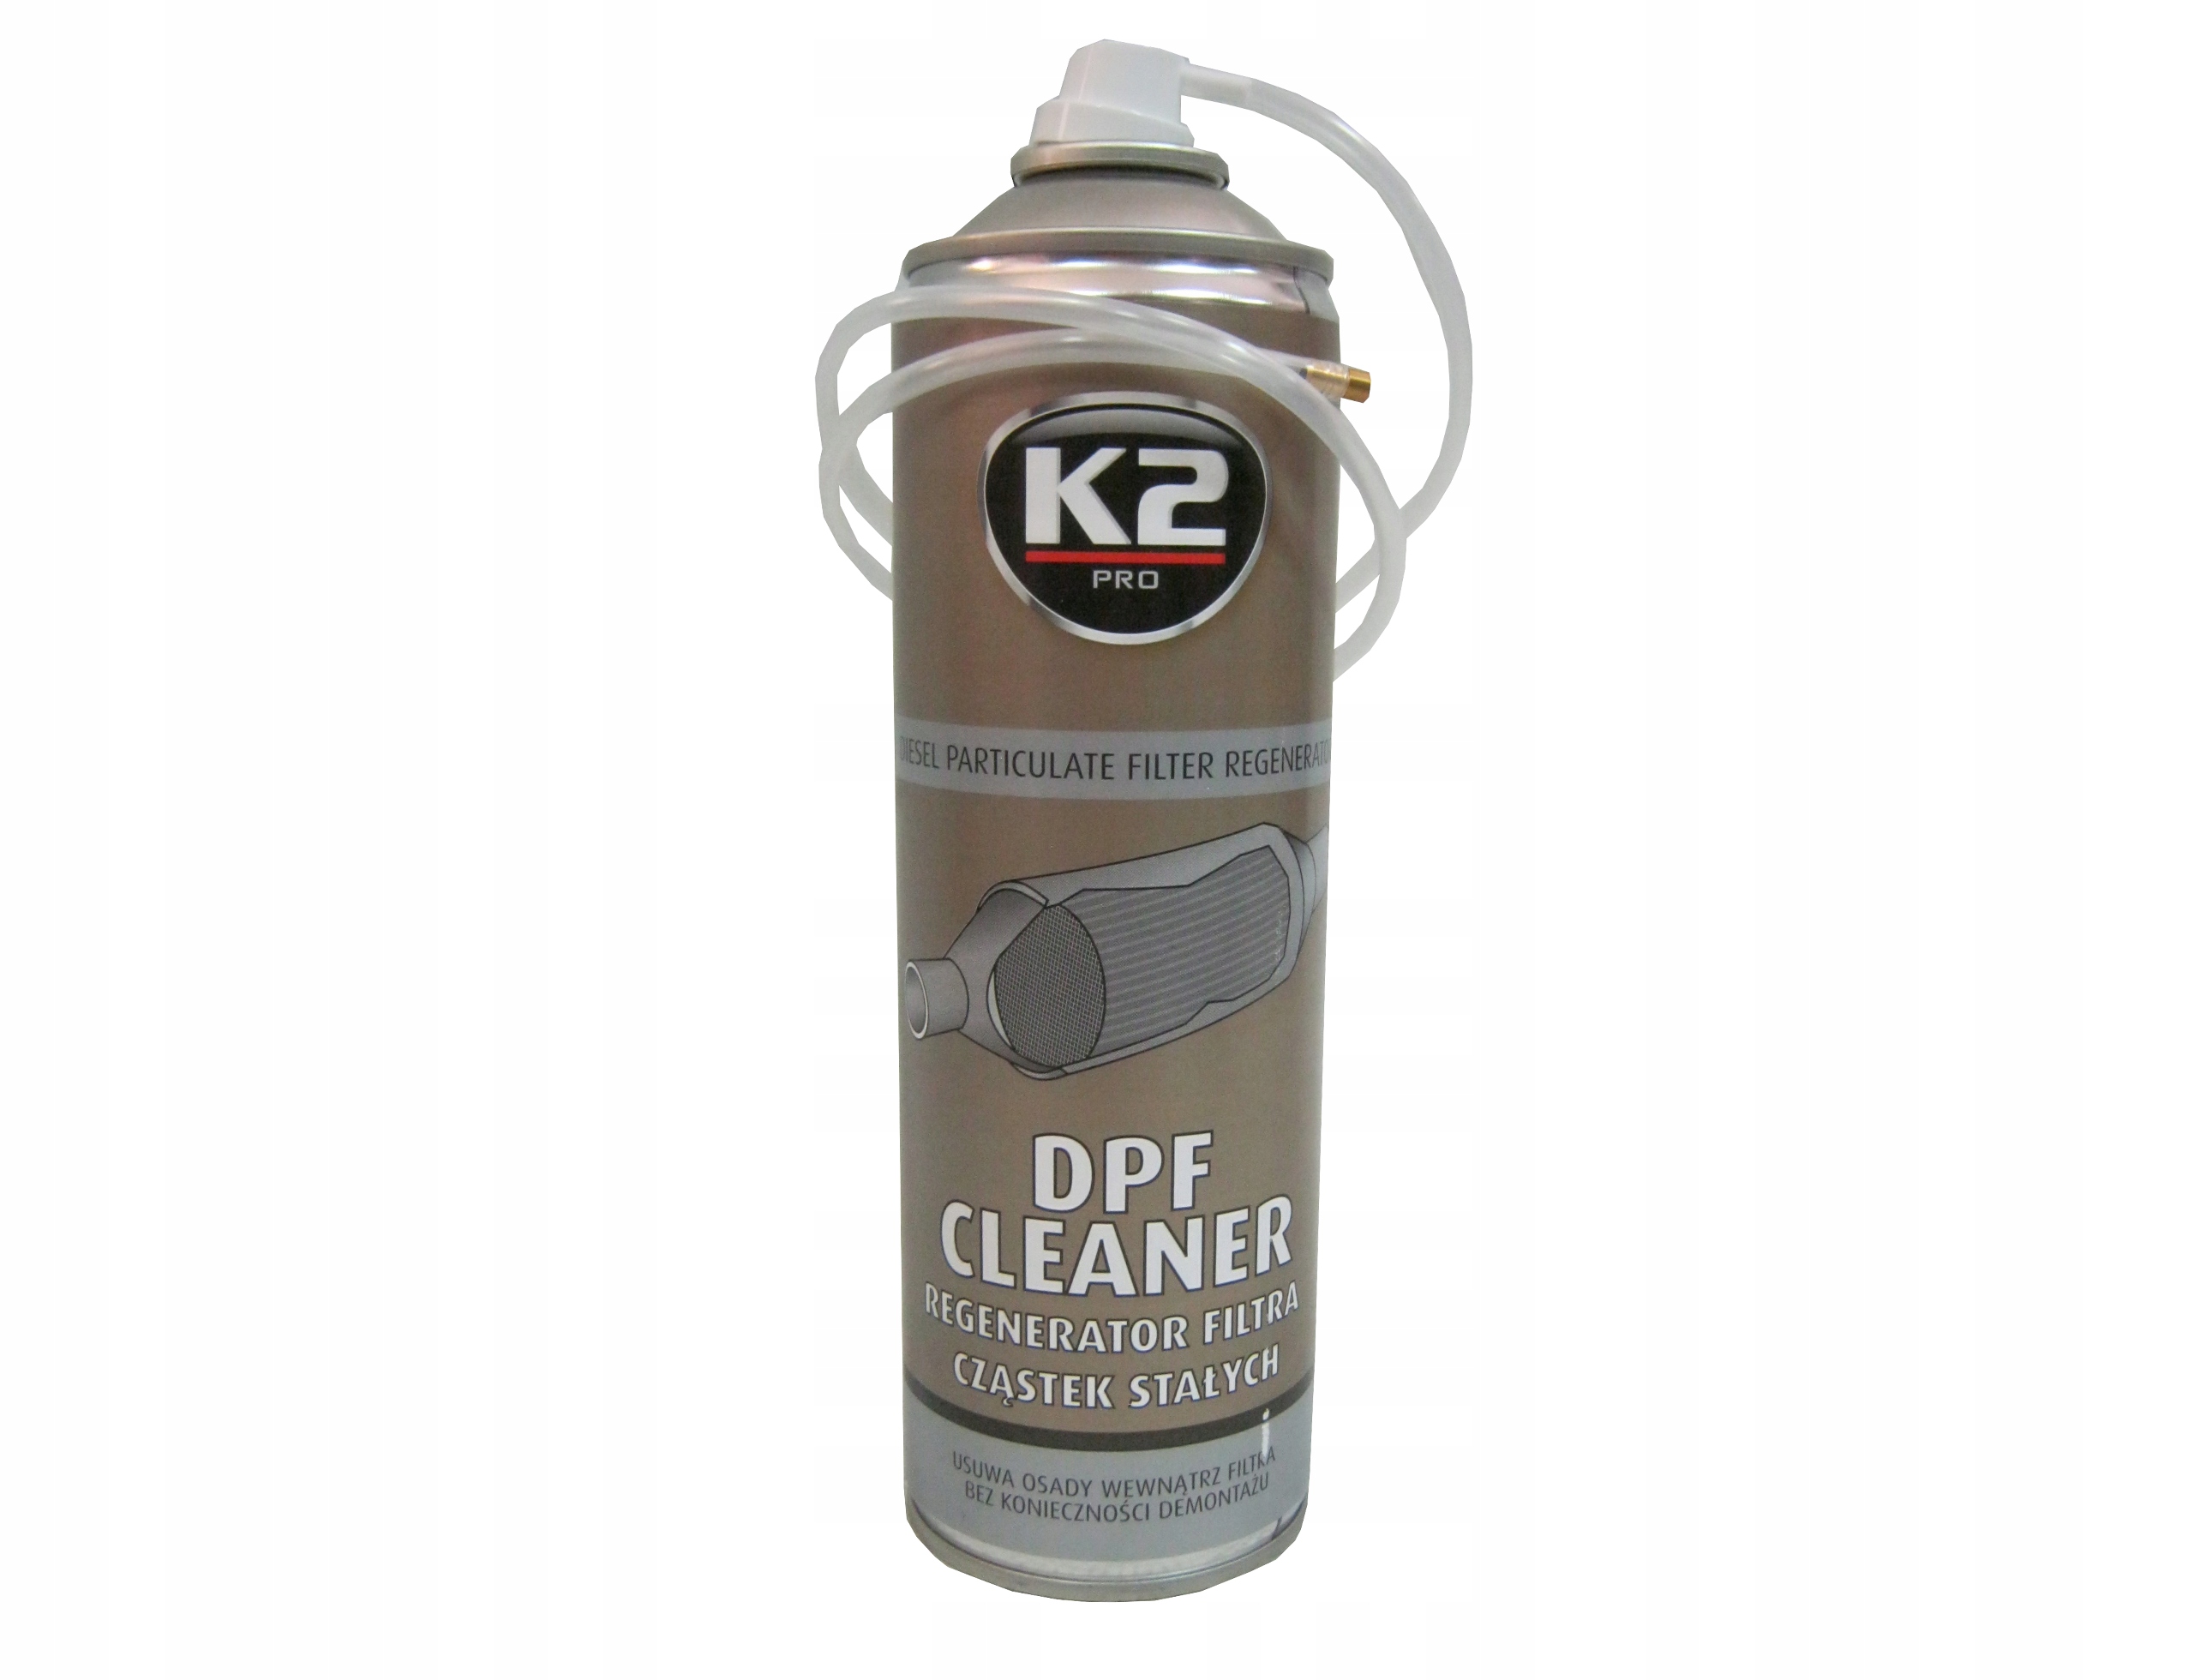 Присадка для очистки сажевого фильтра. K2 очиститель DPF. Жидкость для промывки сажевого фильтра дизельного двигателя. K2 w155 очиститель сажевого/сажевого фильтра объем: 5л, очиститель DPF/Fap. DPF Cleaner очиститель сажевого фильтра.